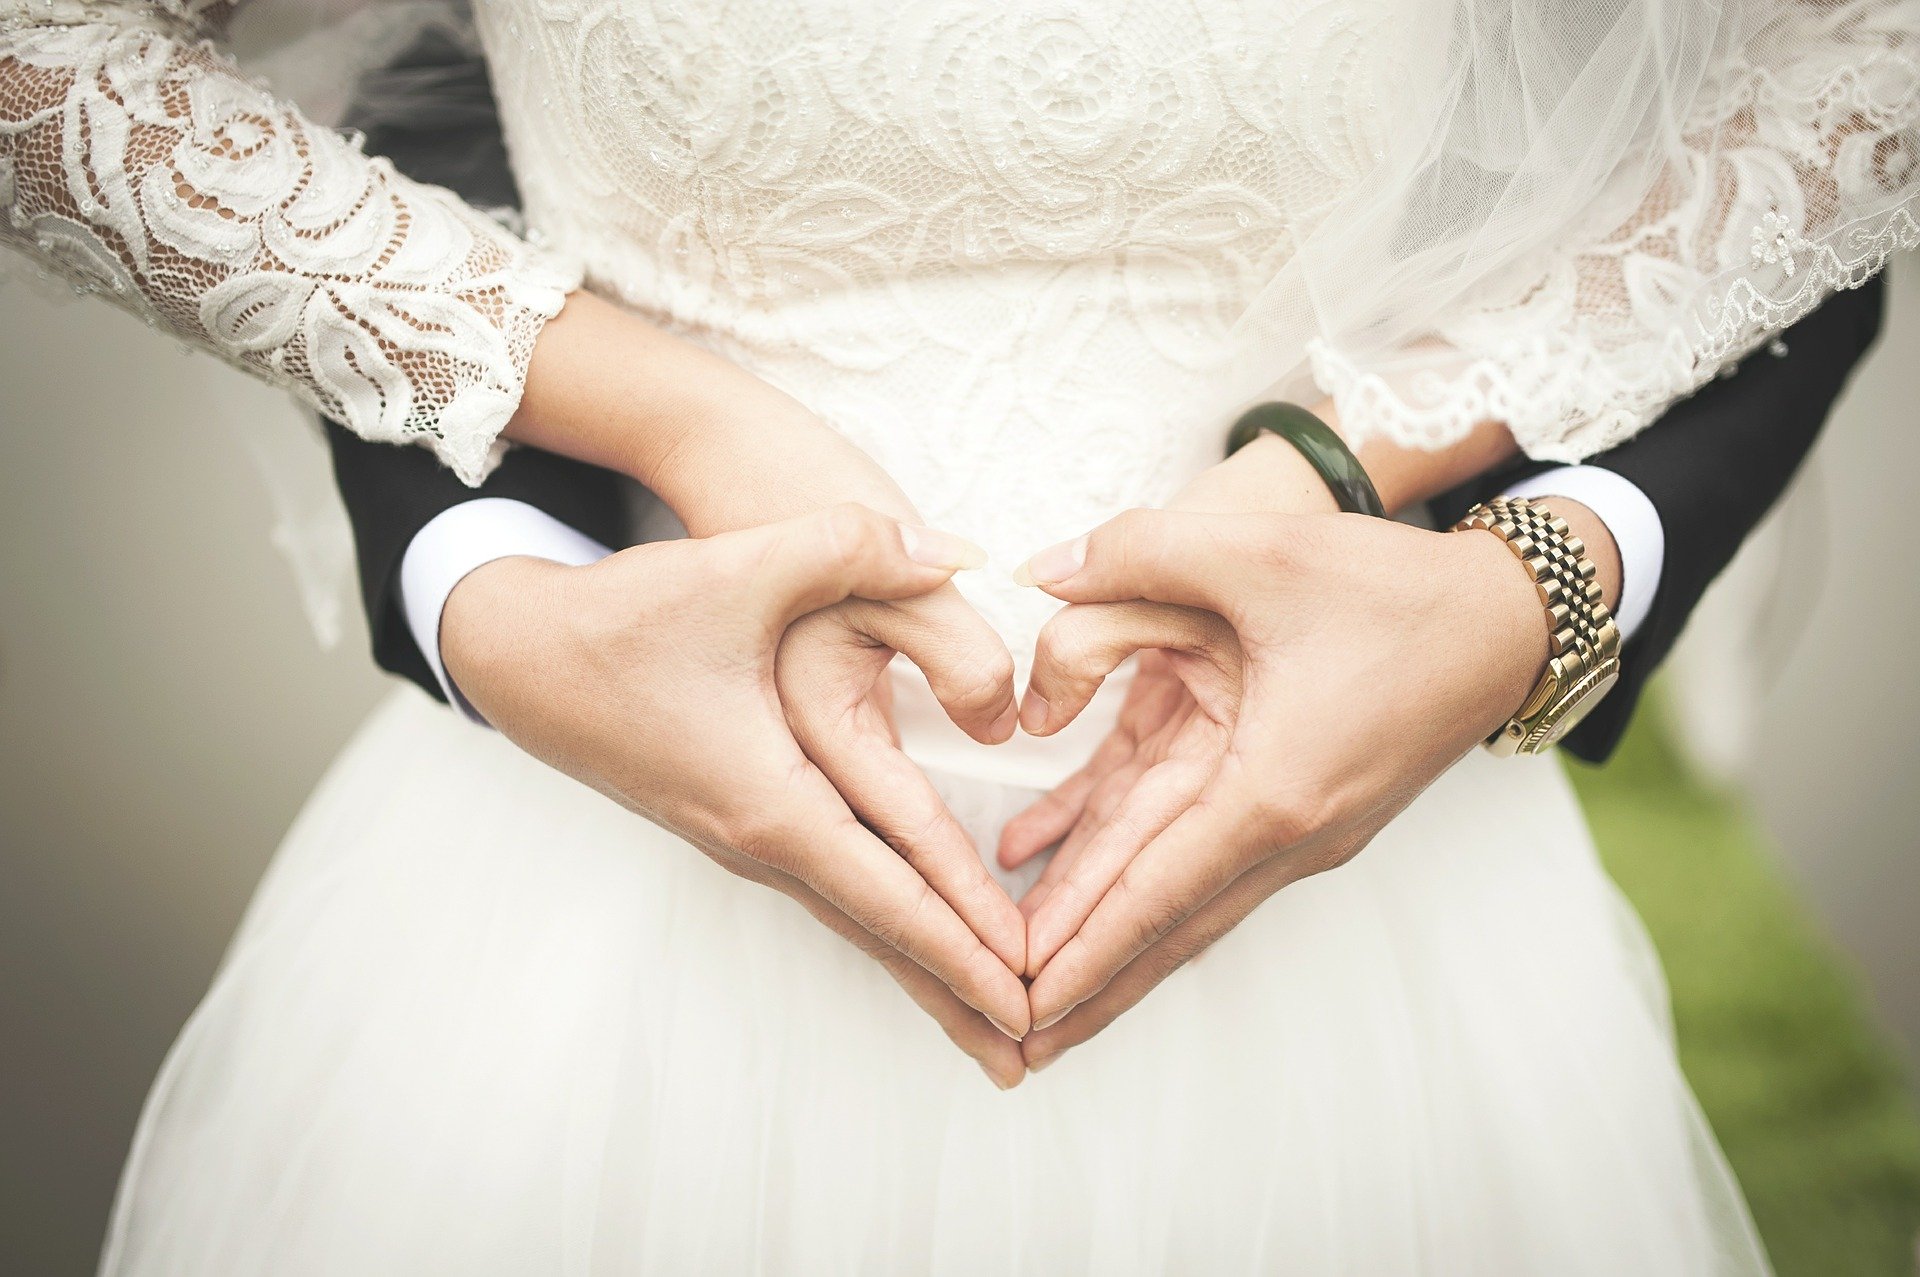 Cónyuges podrán solicitar el divorcio tras 6 meses de matrimonio, por incompatibilidad de caracteres